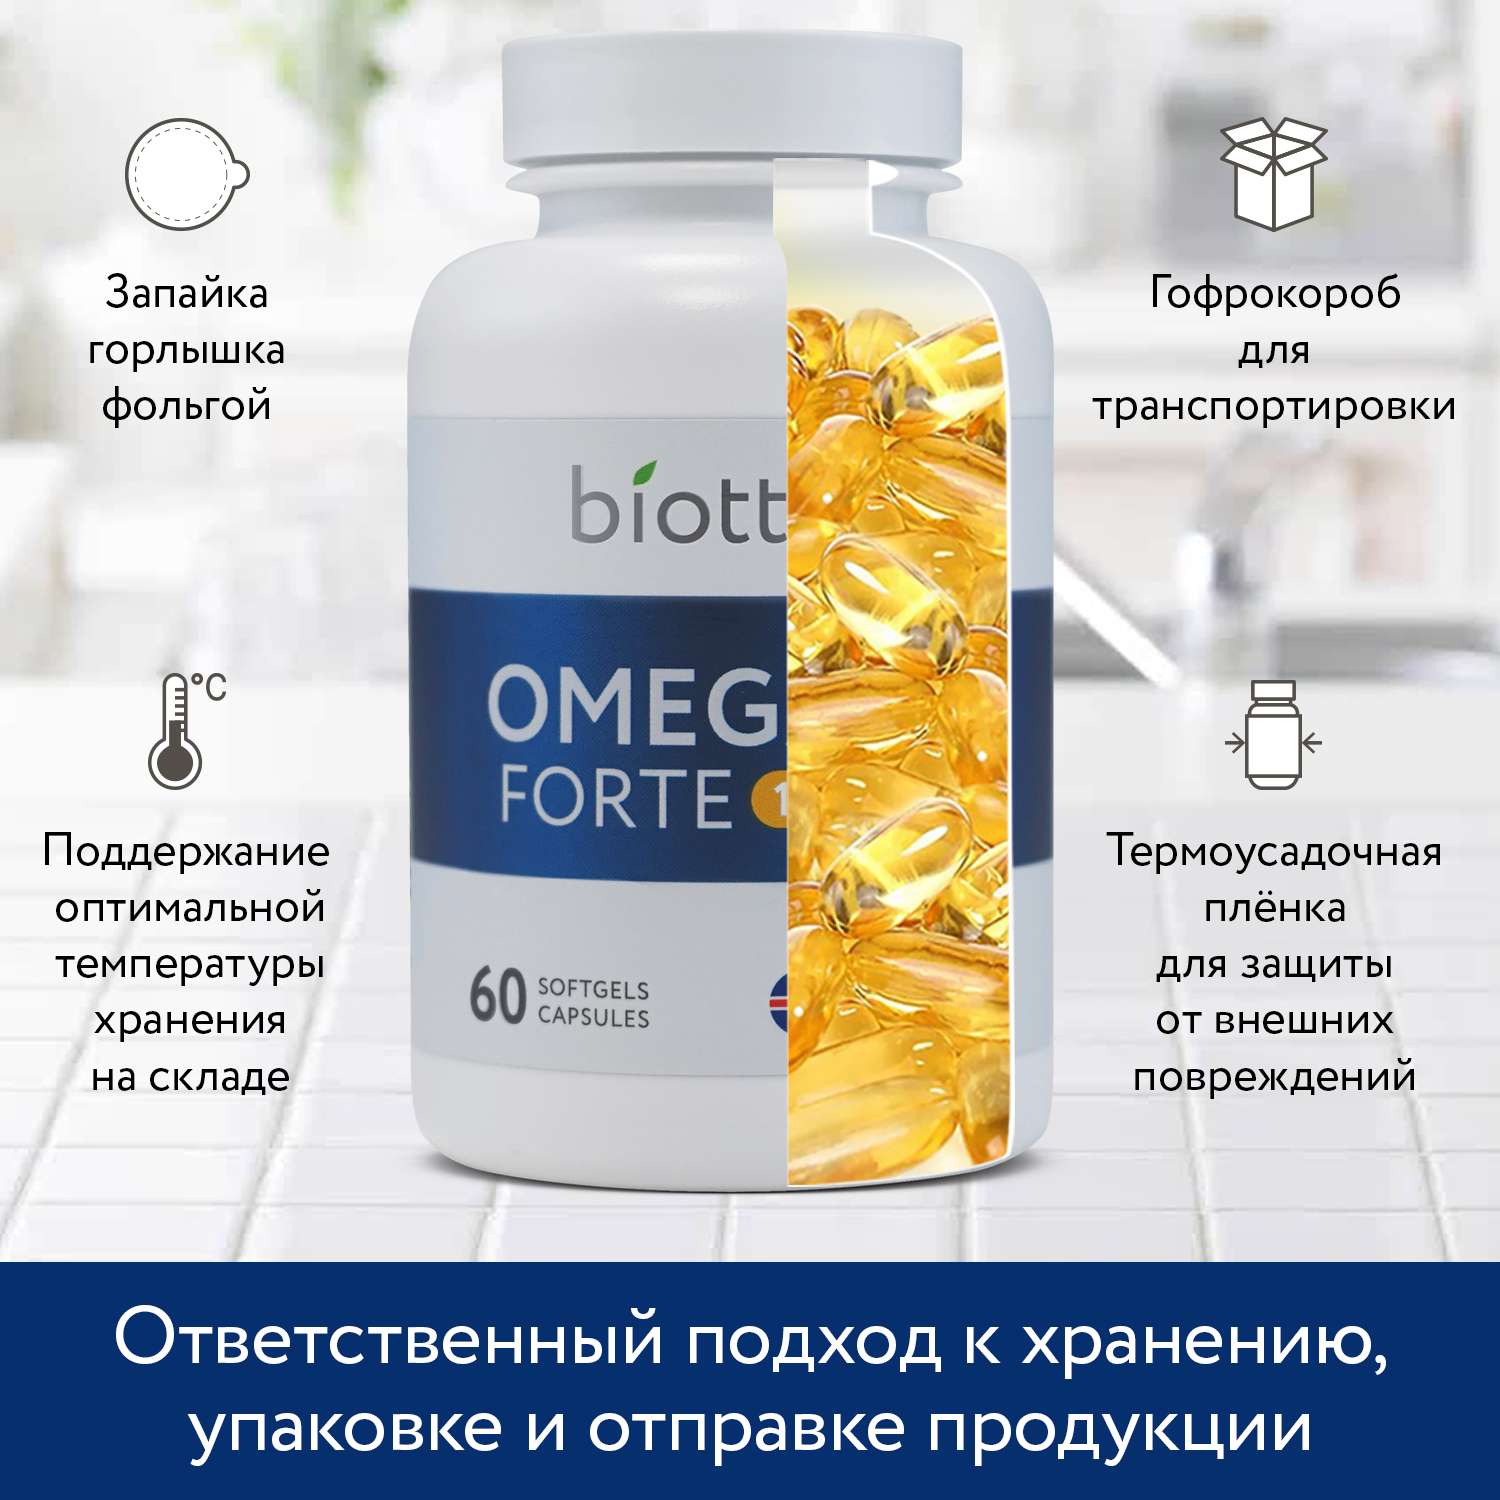 Омега 3 форте в капсулах BIOTTE omega forte 1620 mg fish oil премиальный рыбий жир БАД для взрослых и подростков 60 капсул - фото 5